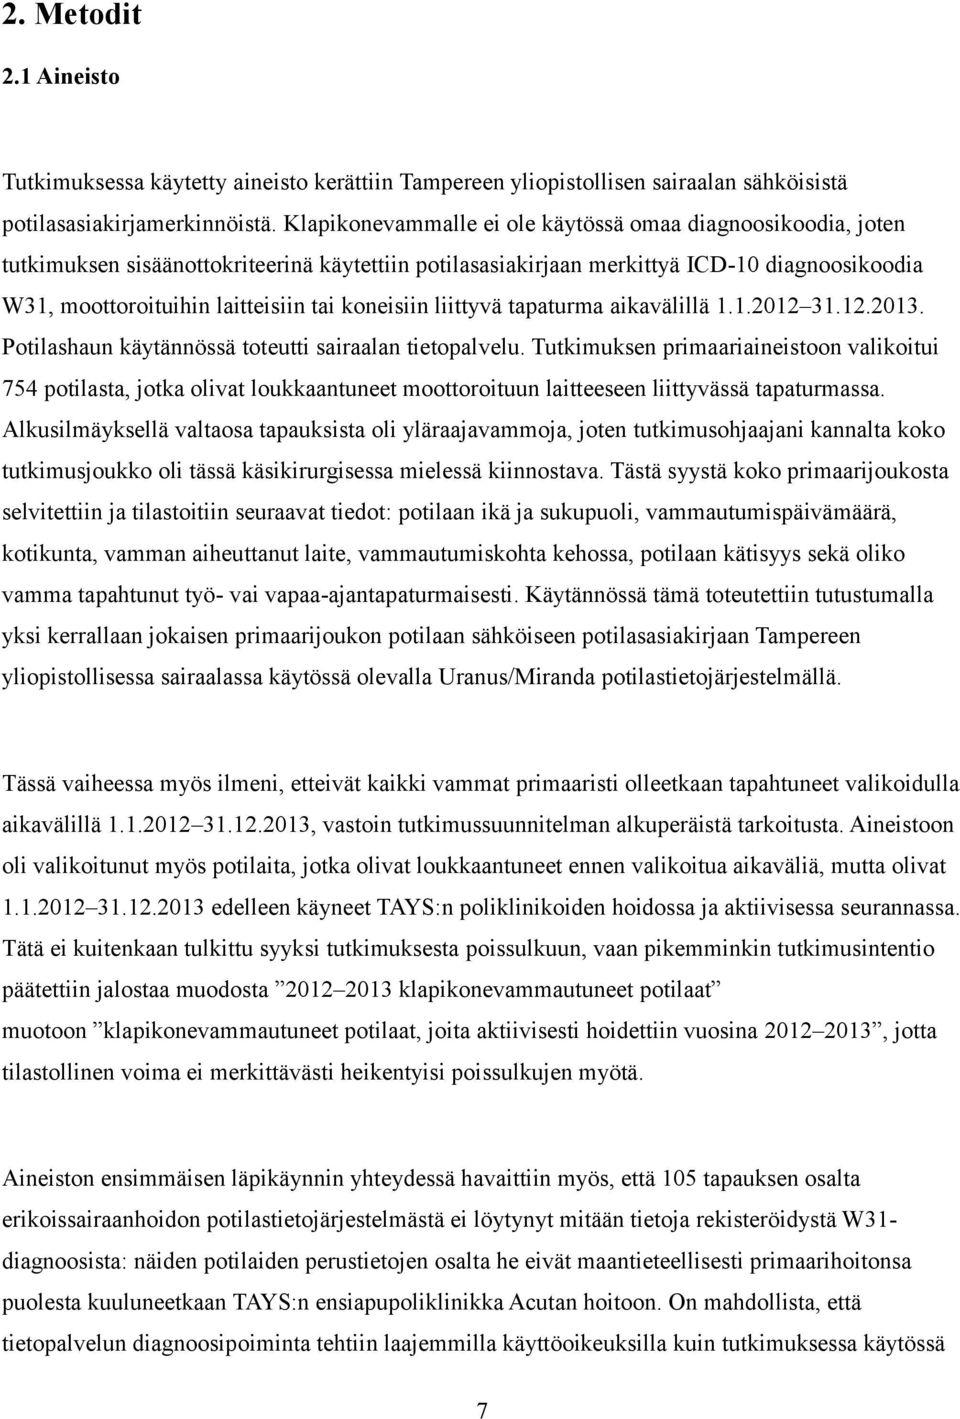 koneisiin liittyvä tapaturma aikavälillä 1.1.2012 31.12.2013. Potilashaun käytännössä toteutti sairaalan tietopalvelu.